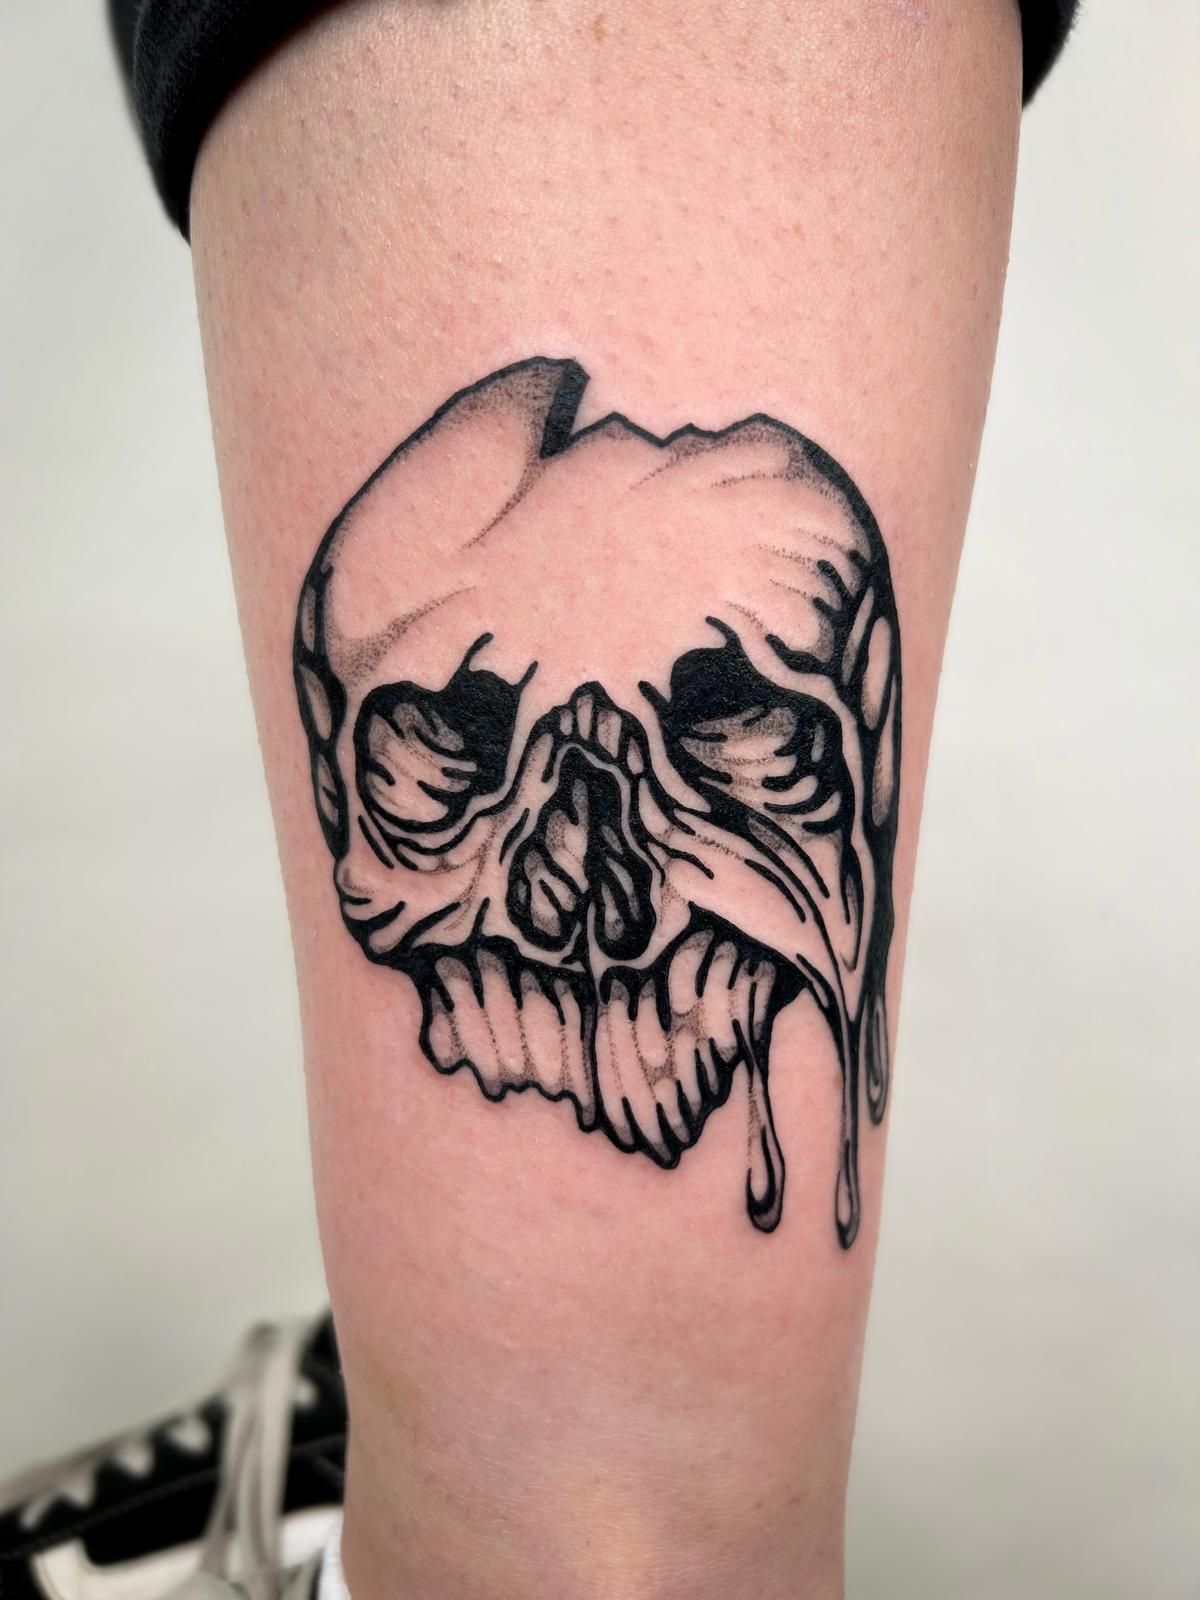 Ram skull by me at Baron art tattoo studio in LB,CA : r/tattoos